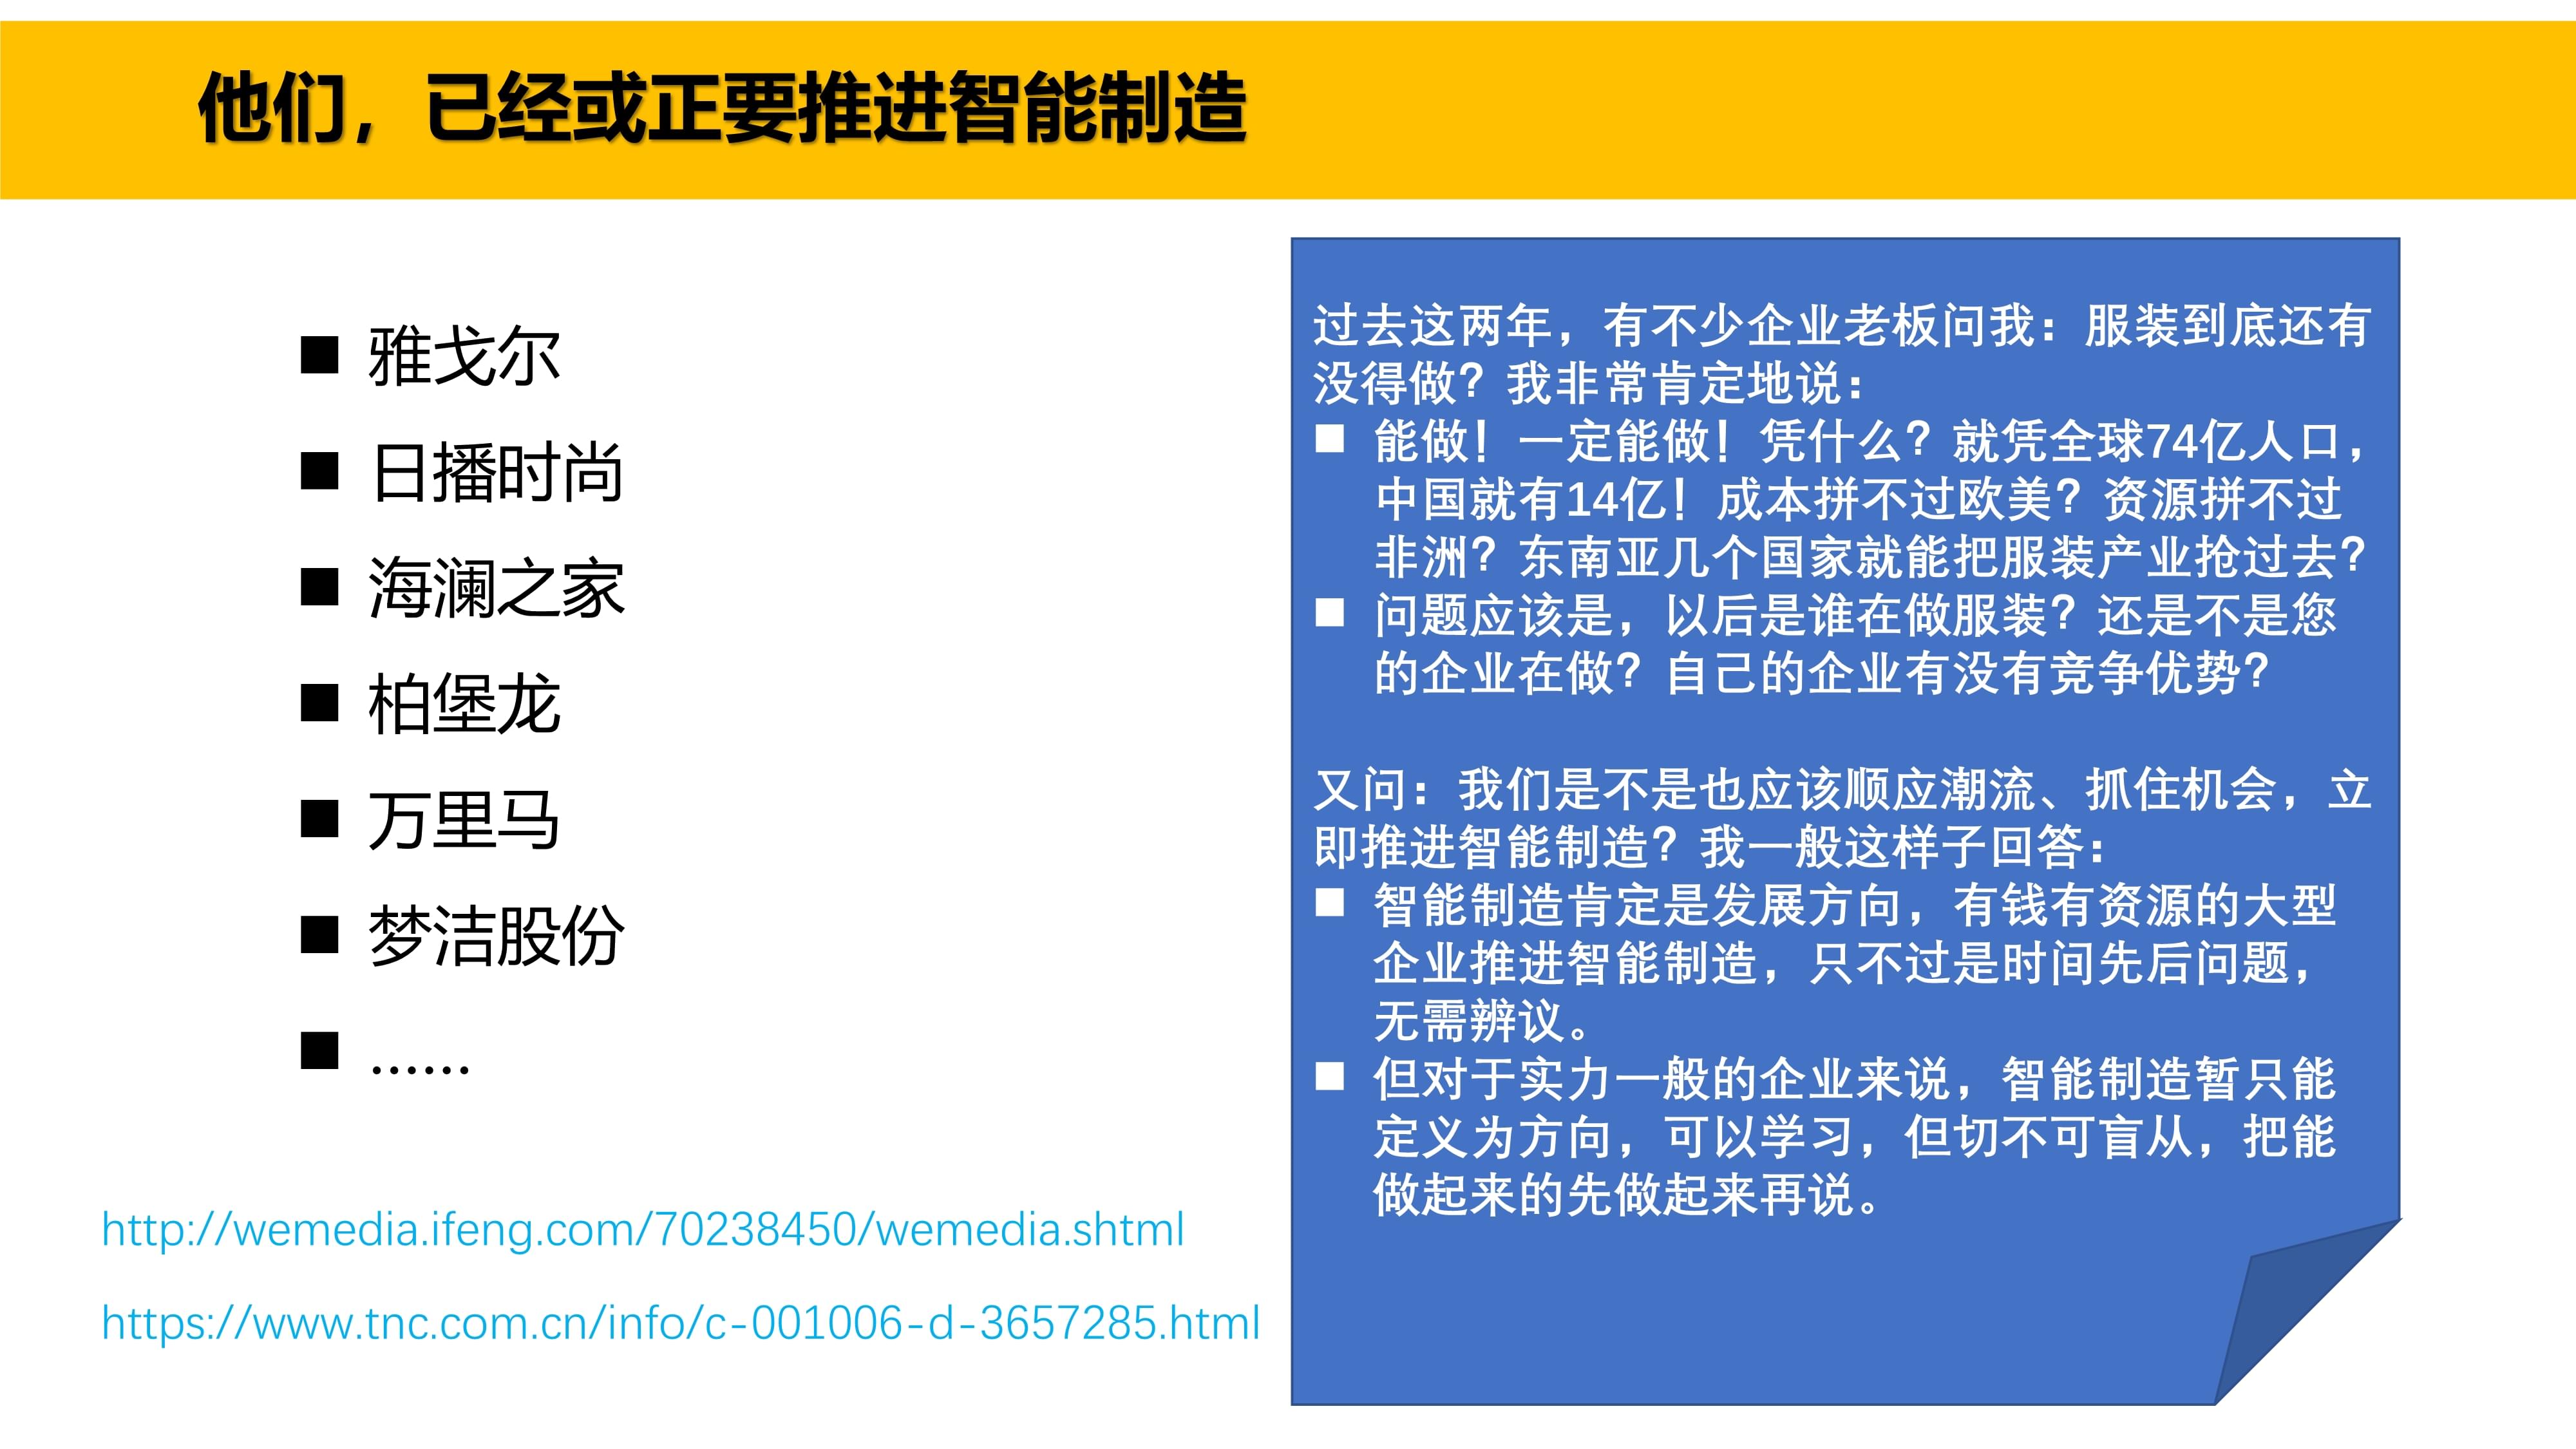 智能制造分步走,丰捷软件,广州丰捷企业管理服务有限公司